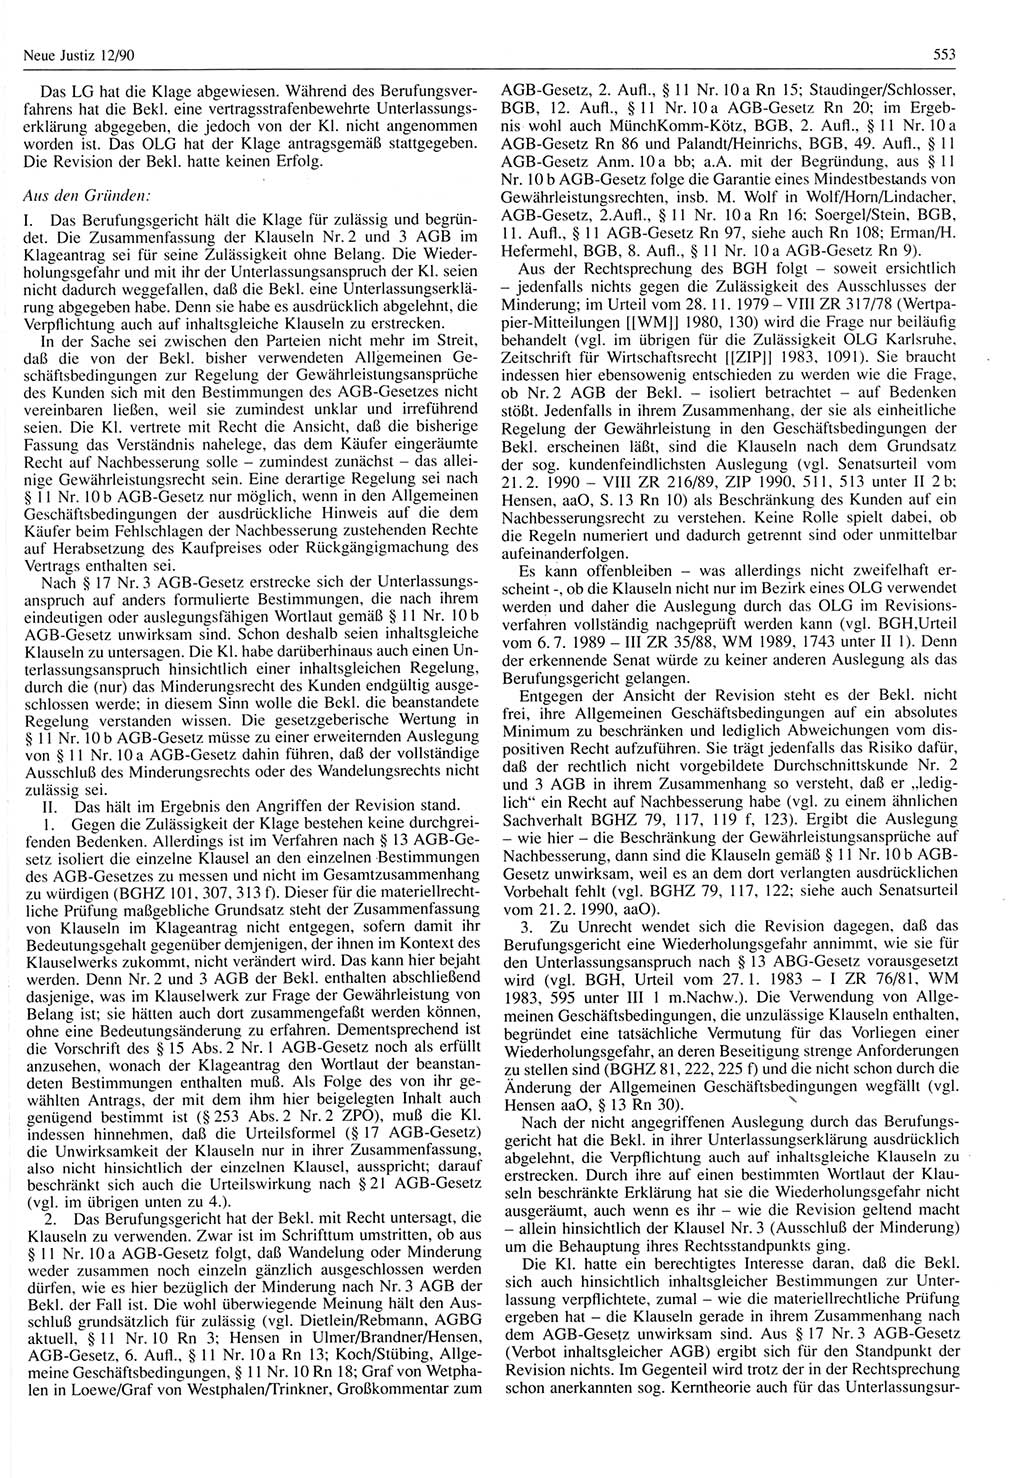 Neue Justiz (NJ), Zeitschrift für Rechtsetzung und Rechtsanwendung [Deutsche Demokratische Republik (DDR)], 44. Jahrgang 1990, Seite 553 (NJ DDR 1990, S. 553)